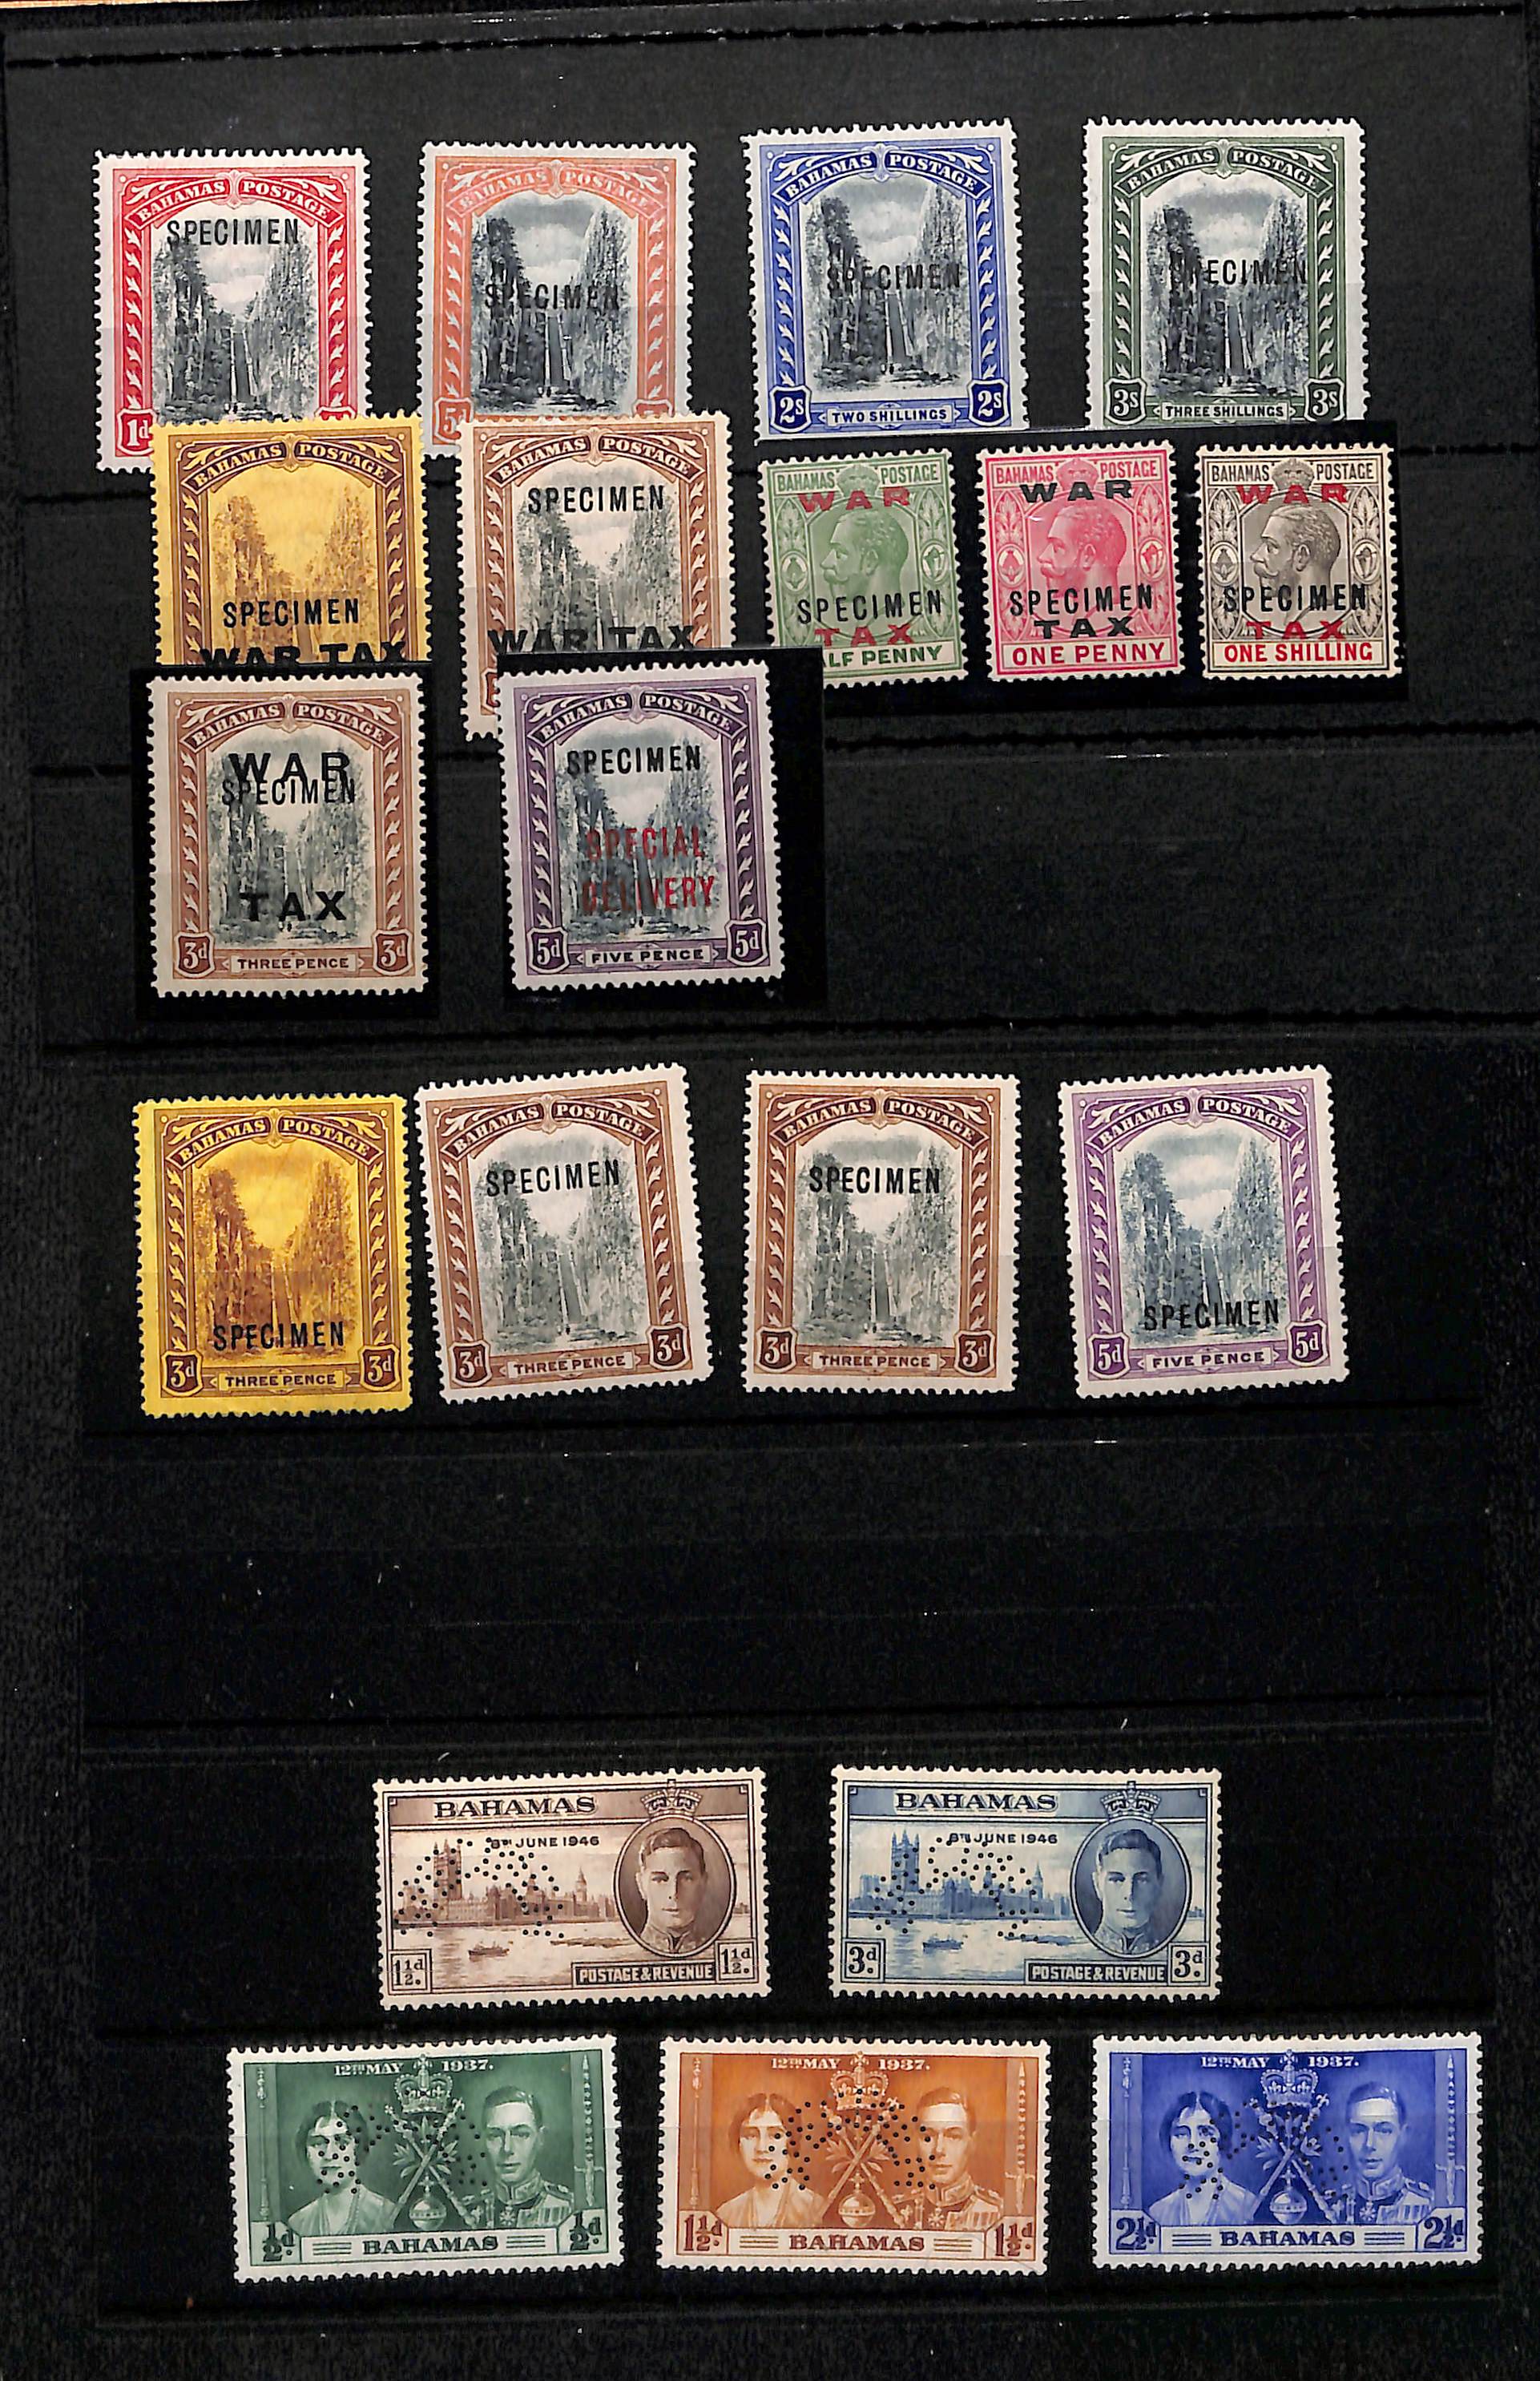 1901-46 Specimen stamps including 1901-03 set of four, 1919 (Mar 21) 3d War Tax overprint, 1919 (